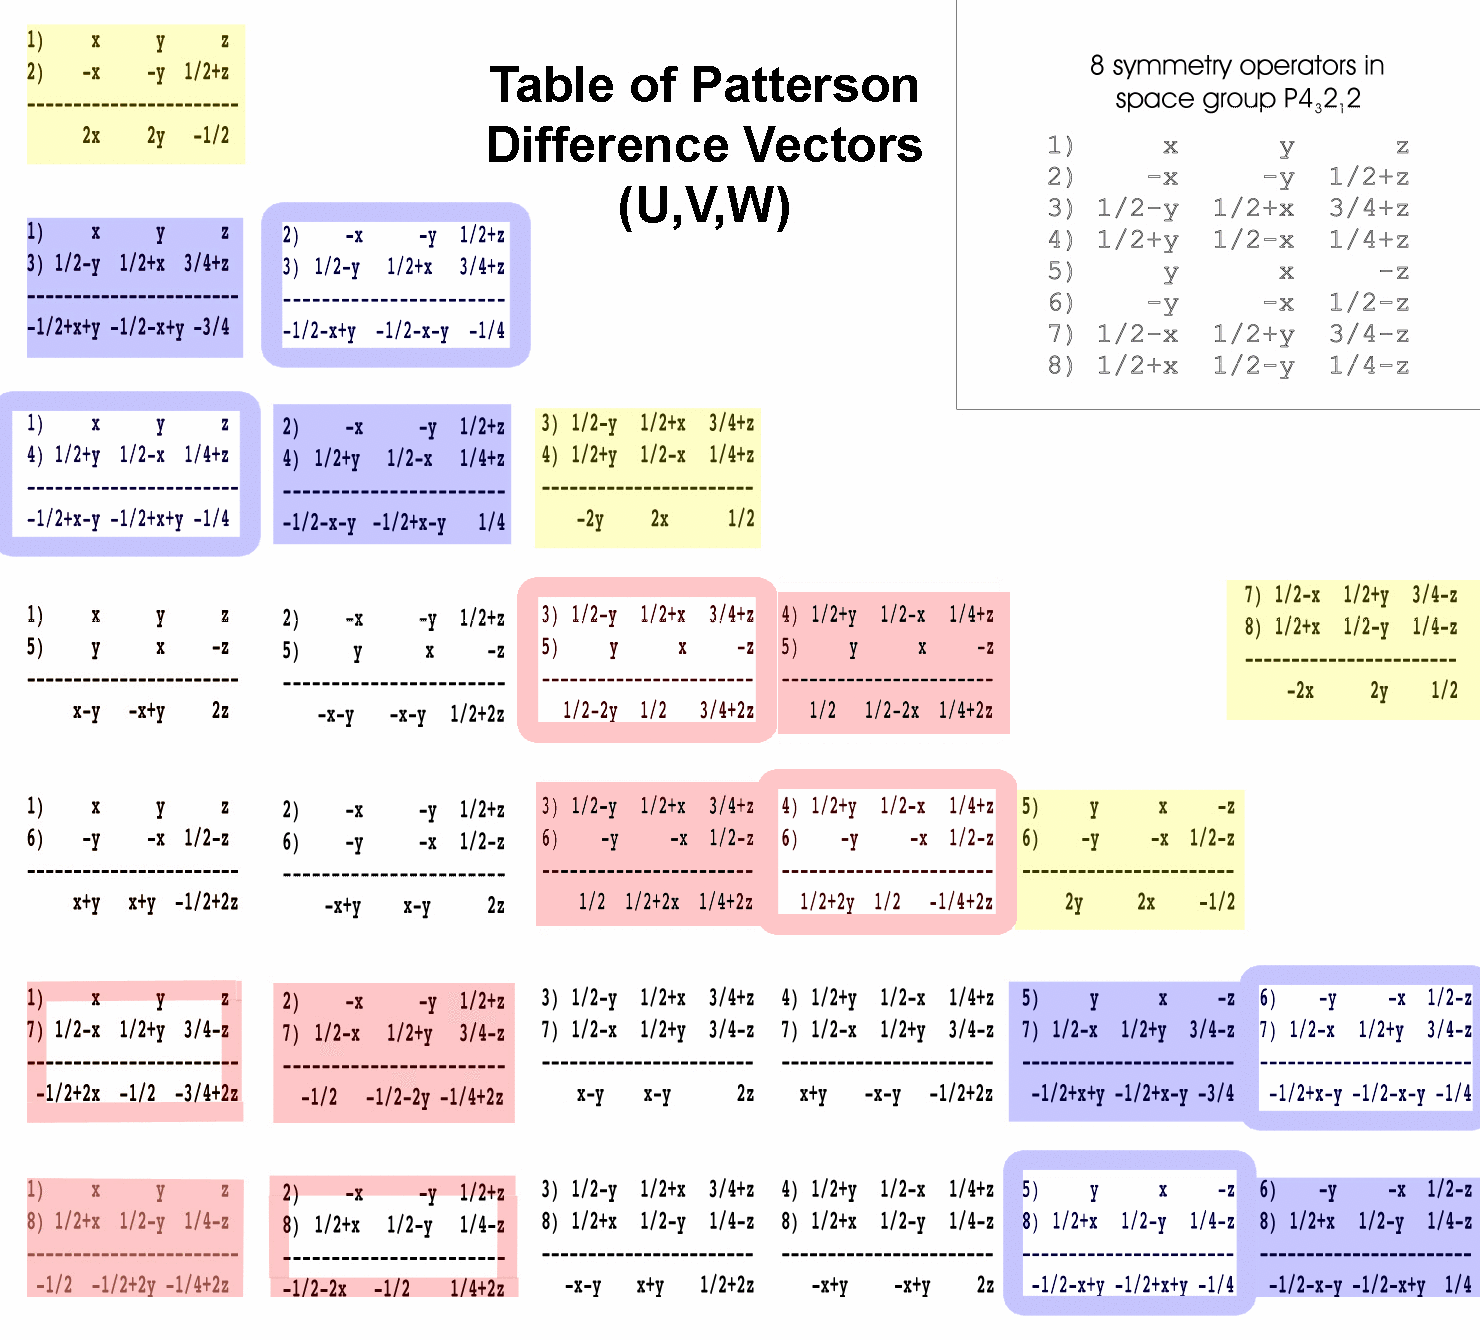 Patterson vectors for P43212